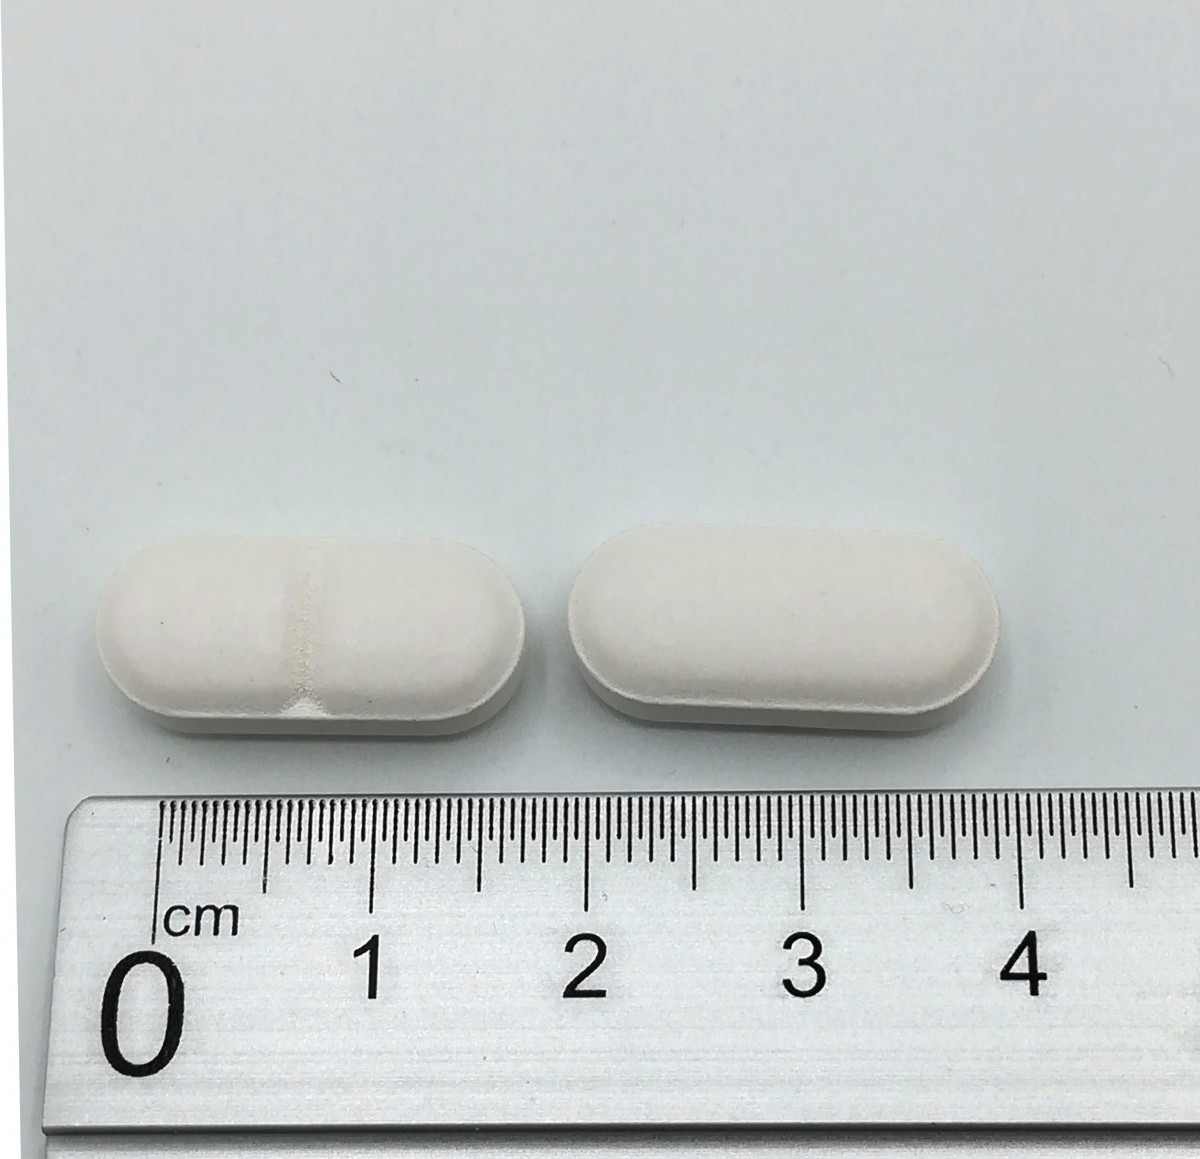 AMOXICILINA/ACIDO CLAVULANICO NORMON 500 mg /125 mg COMPRIMIDOS RECUBIERTOS CON PELICULA EFG, 30 comprimidos fotografía de la forma farmacéutica.